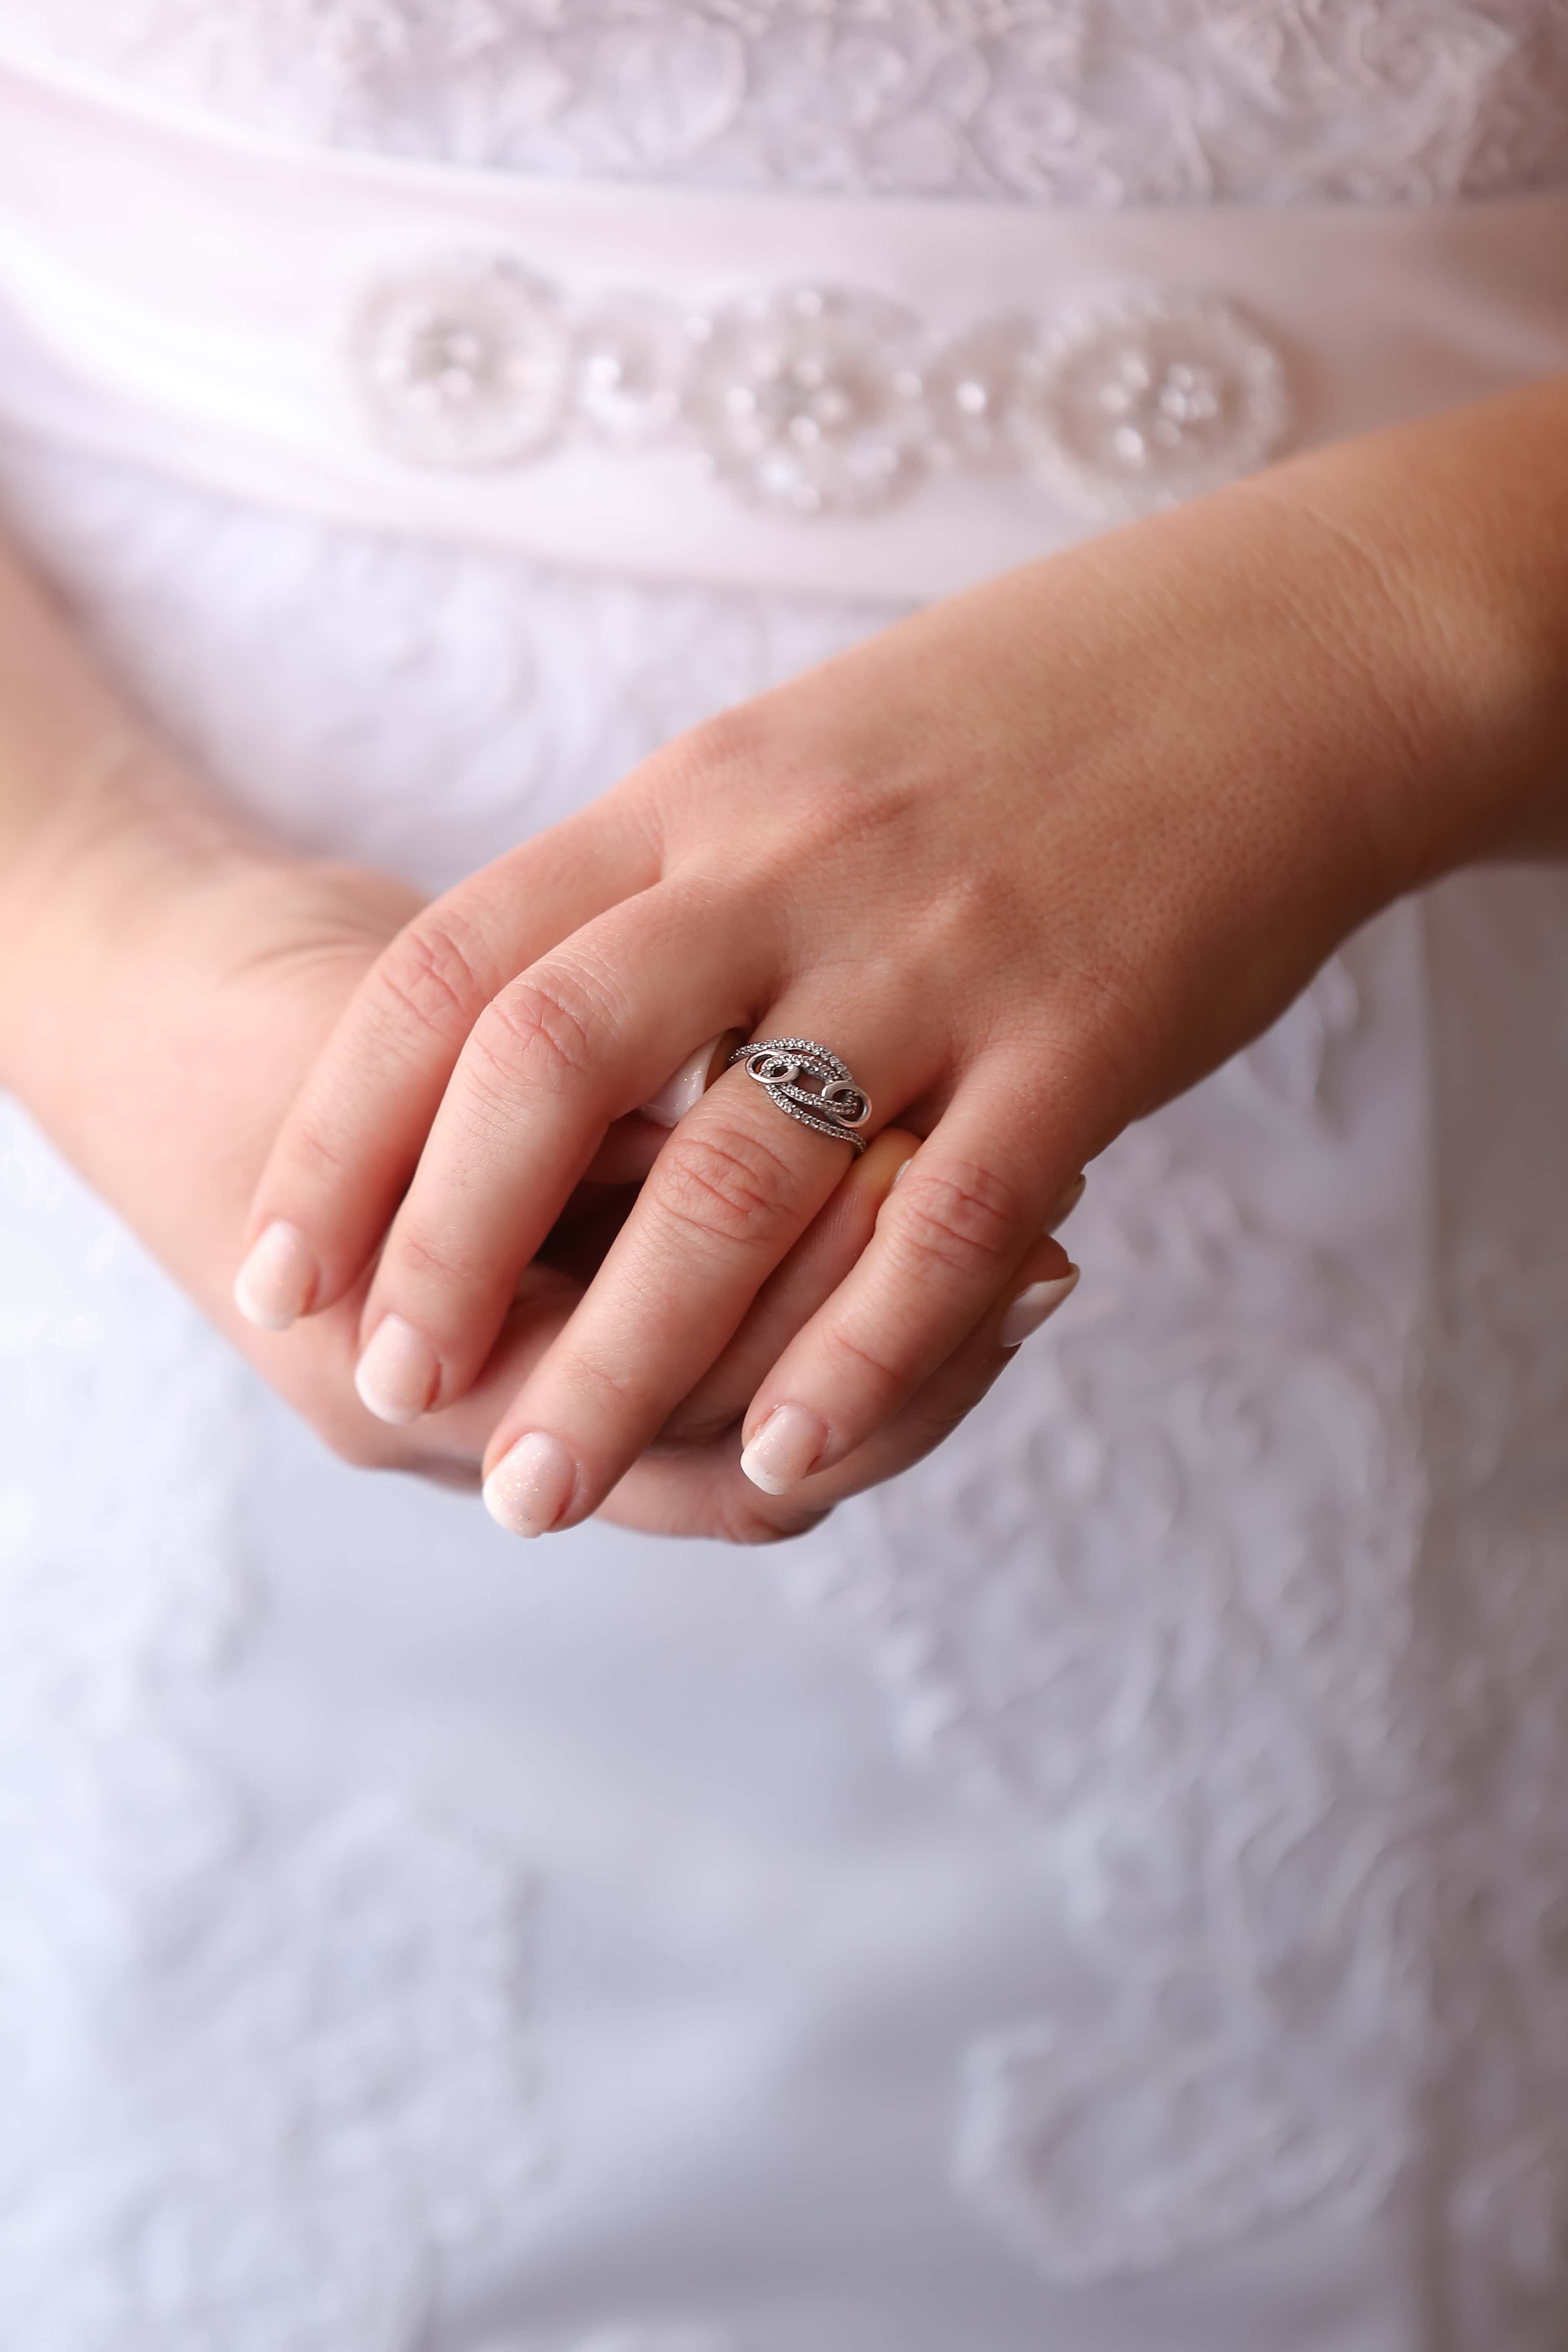 К чему снится обручальное кольцо мужа. Обручальные кольца на руках. Красивые обручальные кольца на руках. Обручальное кольцо на пальце. Обручальное и помолвочное кольцо.